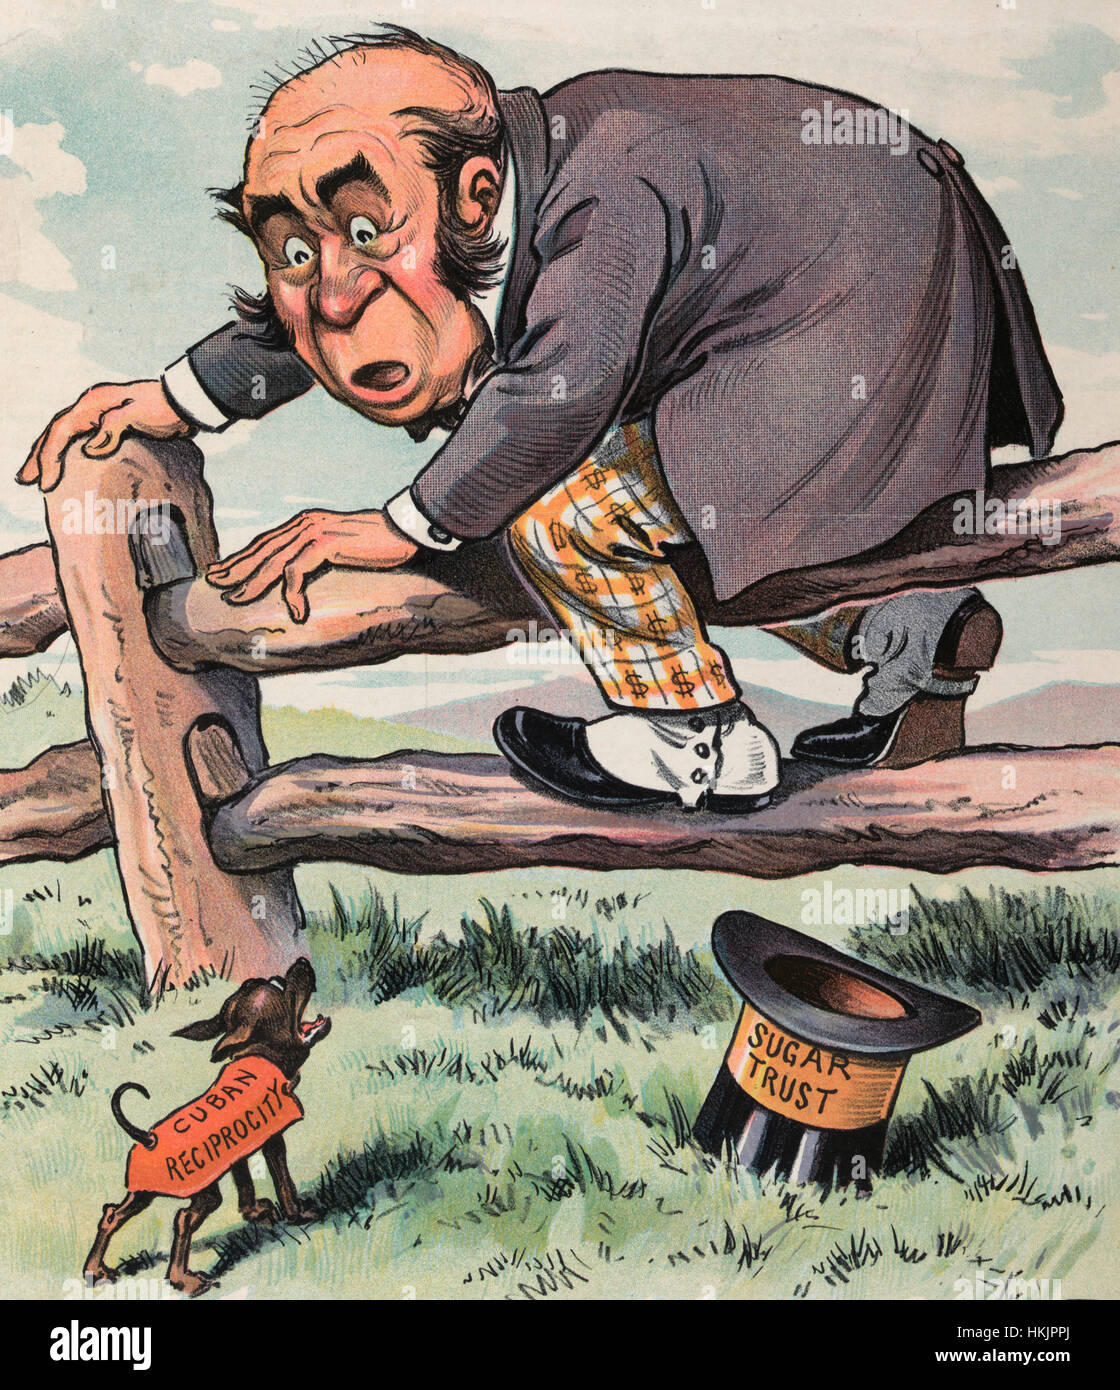 Peur - caricature politique montre un petit chien marqués 'réciprocité' Cubain qui jappe à un homme qui a escaladé une clôture de la peur, son chapeau étiqueté 'trust' tombé à terre. 1902 Banque D'Images